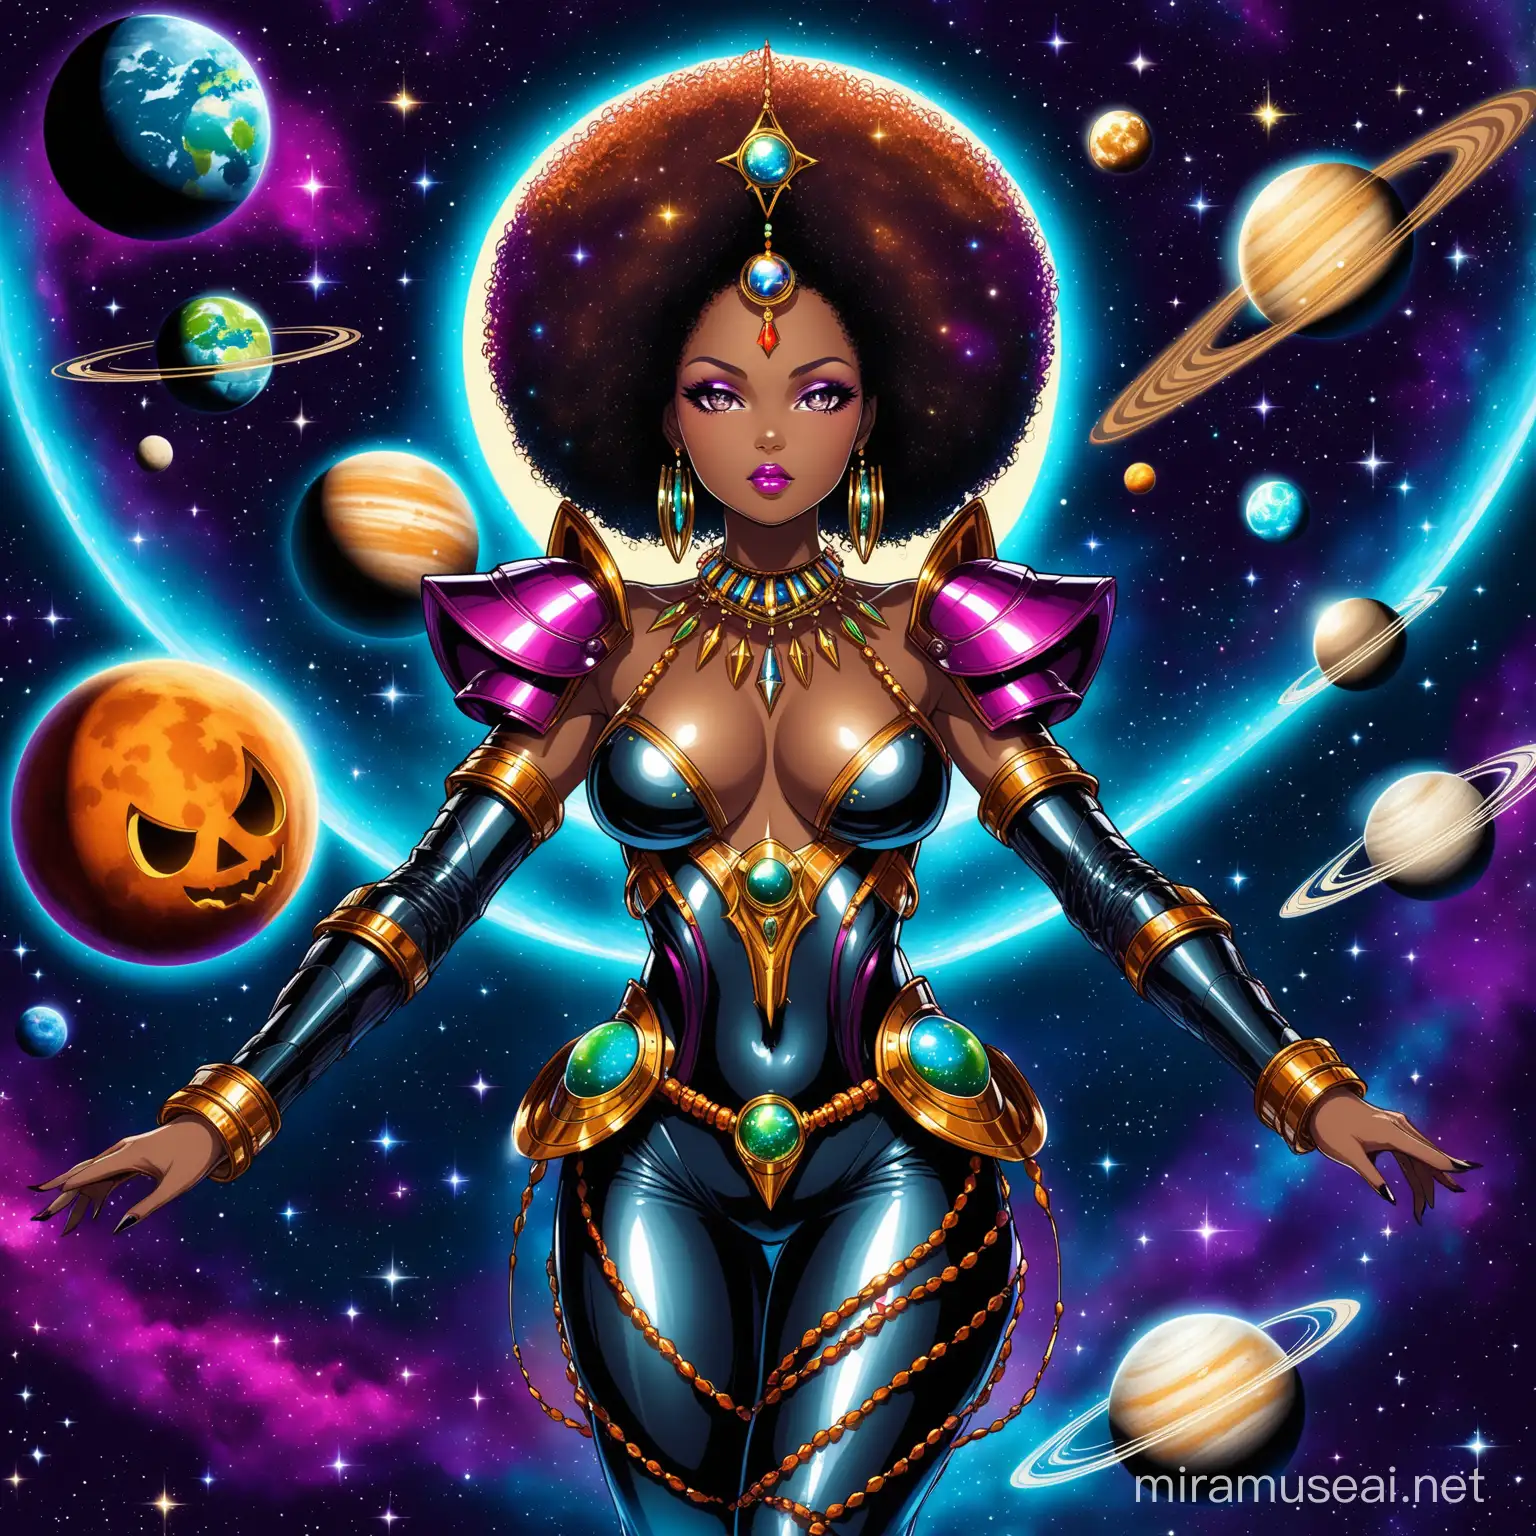 AFRO FUTURISTIC LADY WITH AFRICAN JEWELLERY AND A HALLOWEEN SPOOKY FEEL TO THE IMAGE...figura intera....regina del cosmo con armatura sexy...stile cosmic...attorno i pianeti e le stelle

DOWNLOAD